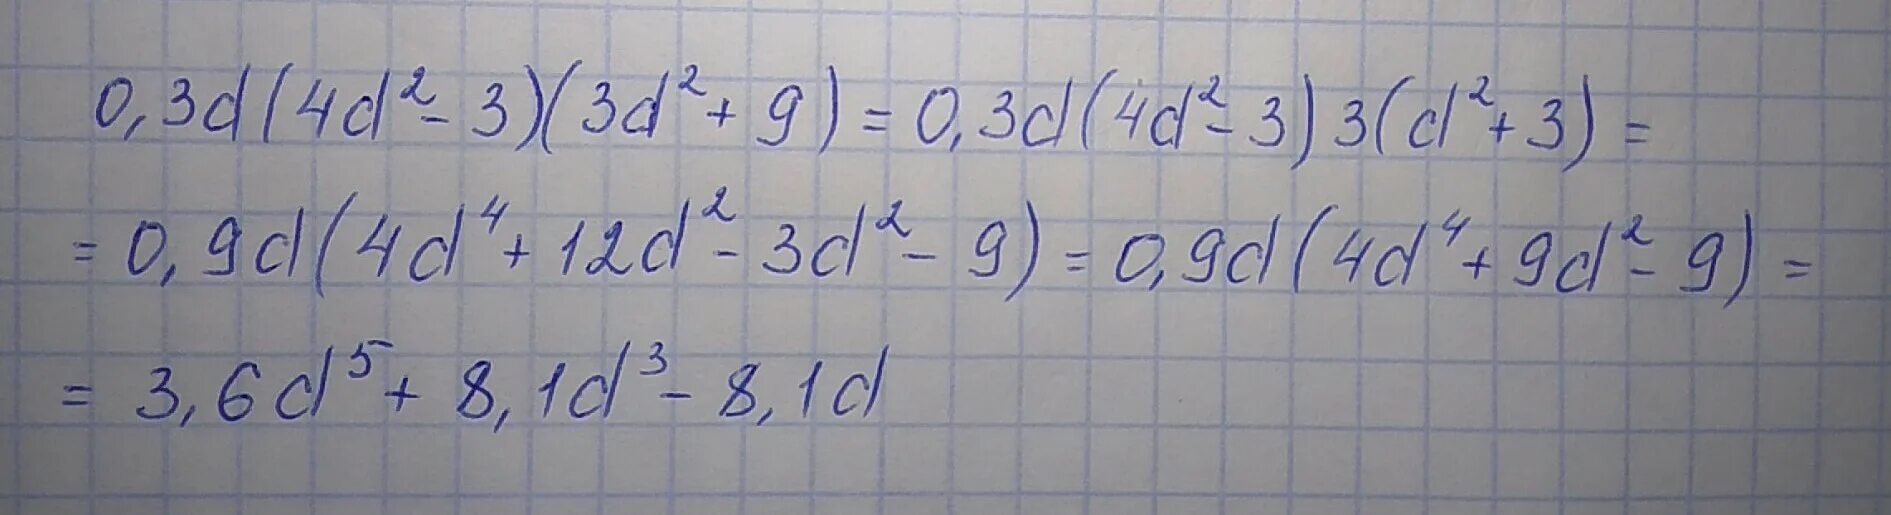 Выполни действие 3 0 2. Выполни действия 0,1d(3d^2 -3)(3d^2 +6). Выполните действия 0,4d(3d 2-3)(3d 2+5). Выполни действия 0,2d(4d2-3)(3d2+8). Выполните действие 0,4d(2d^2-3)(3d^2+6).